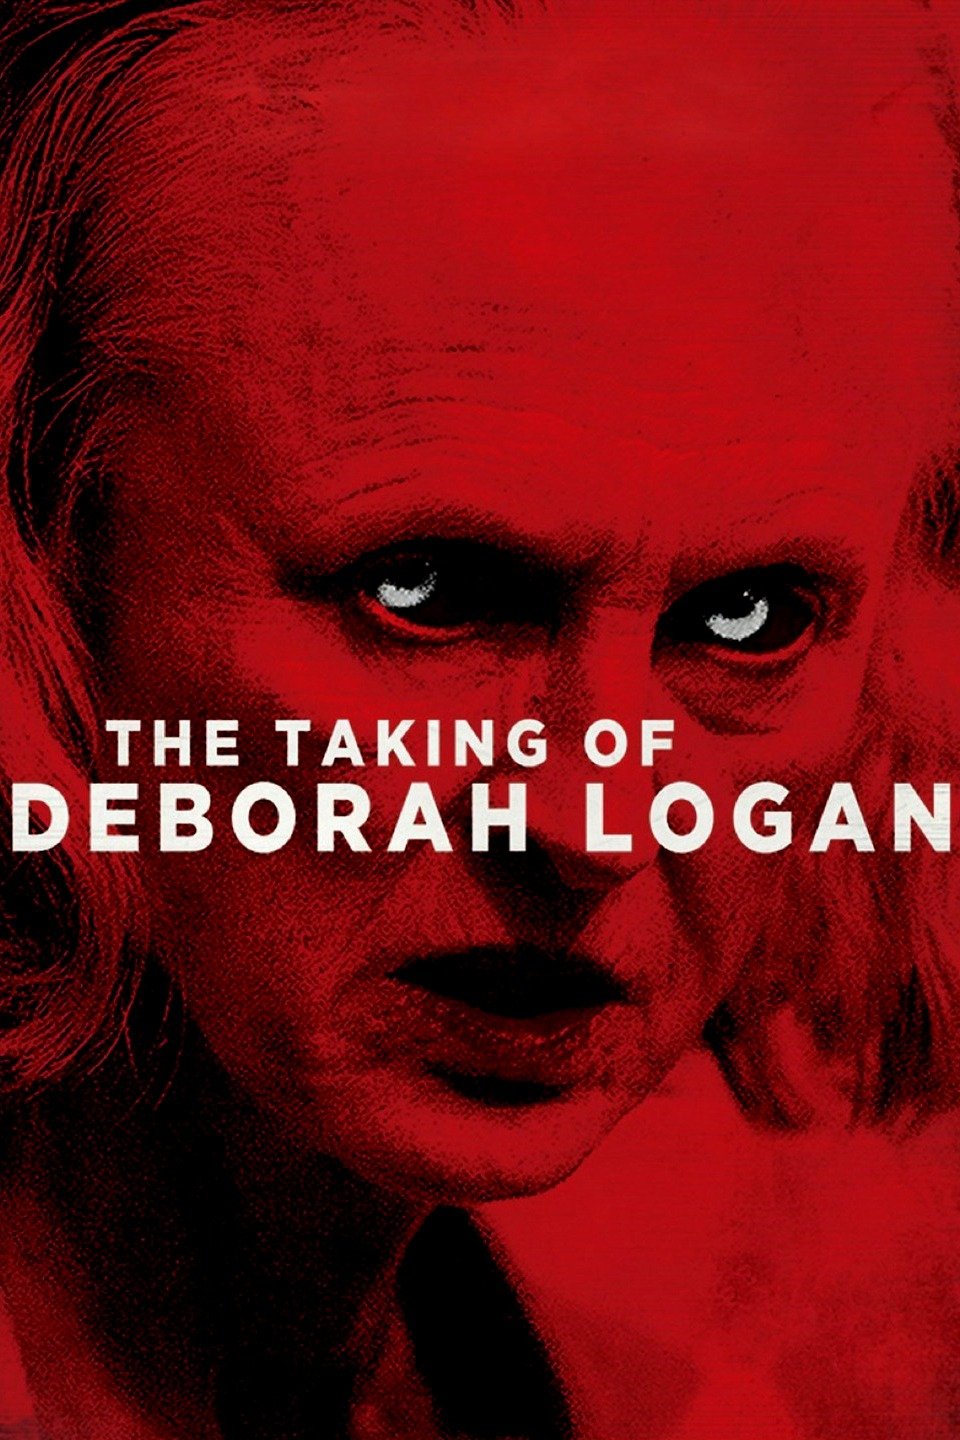 [ฝรั่ง] The Taking Of Deborah Logan (2014) หลอนจิตปริศนา [1080p] [พากย์ไทย 5.1 + เสียงอังกฤษ 5.1] [บรรยายไทย + อังกฤษ] [เสียงไทย + ซับไทย] [OPENLOAD]